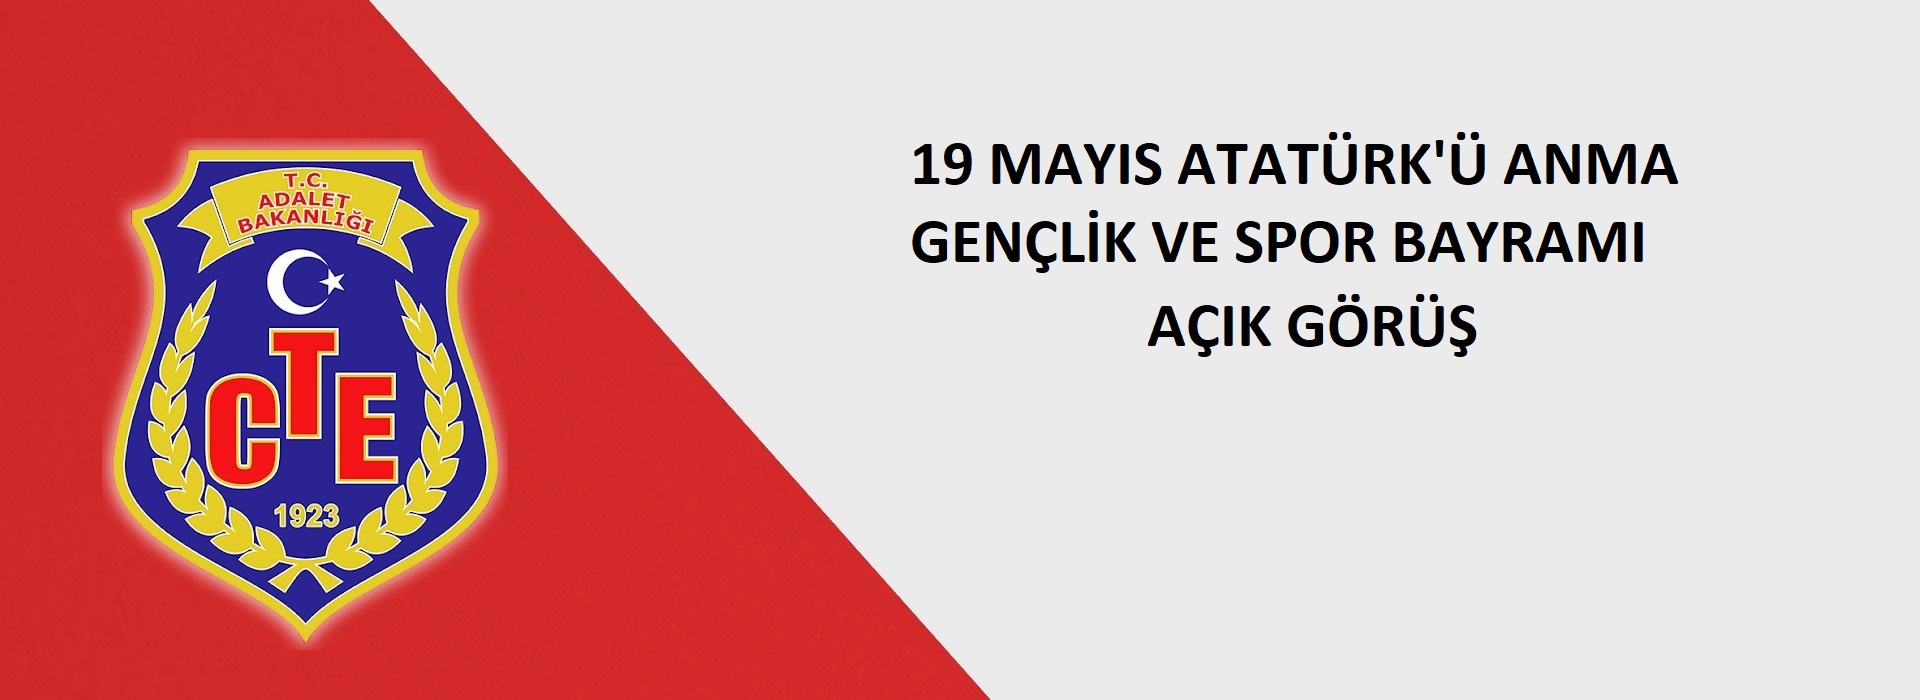 DUYURU ! " 19 Mayıs Atatürk'ü Anma Gençlik ve Spor Bayramı" Açık Görüş